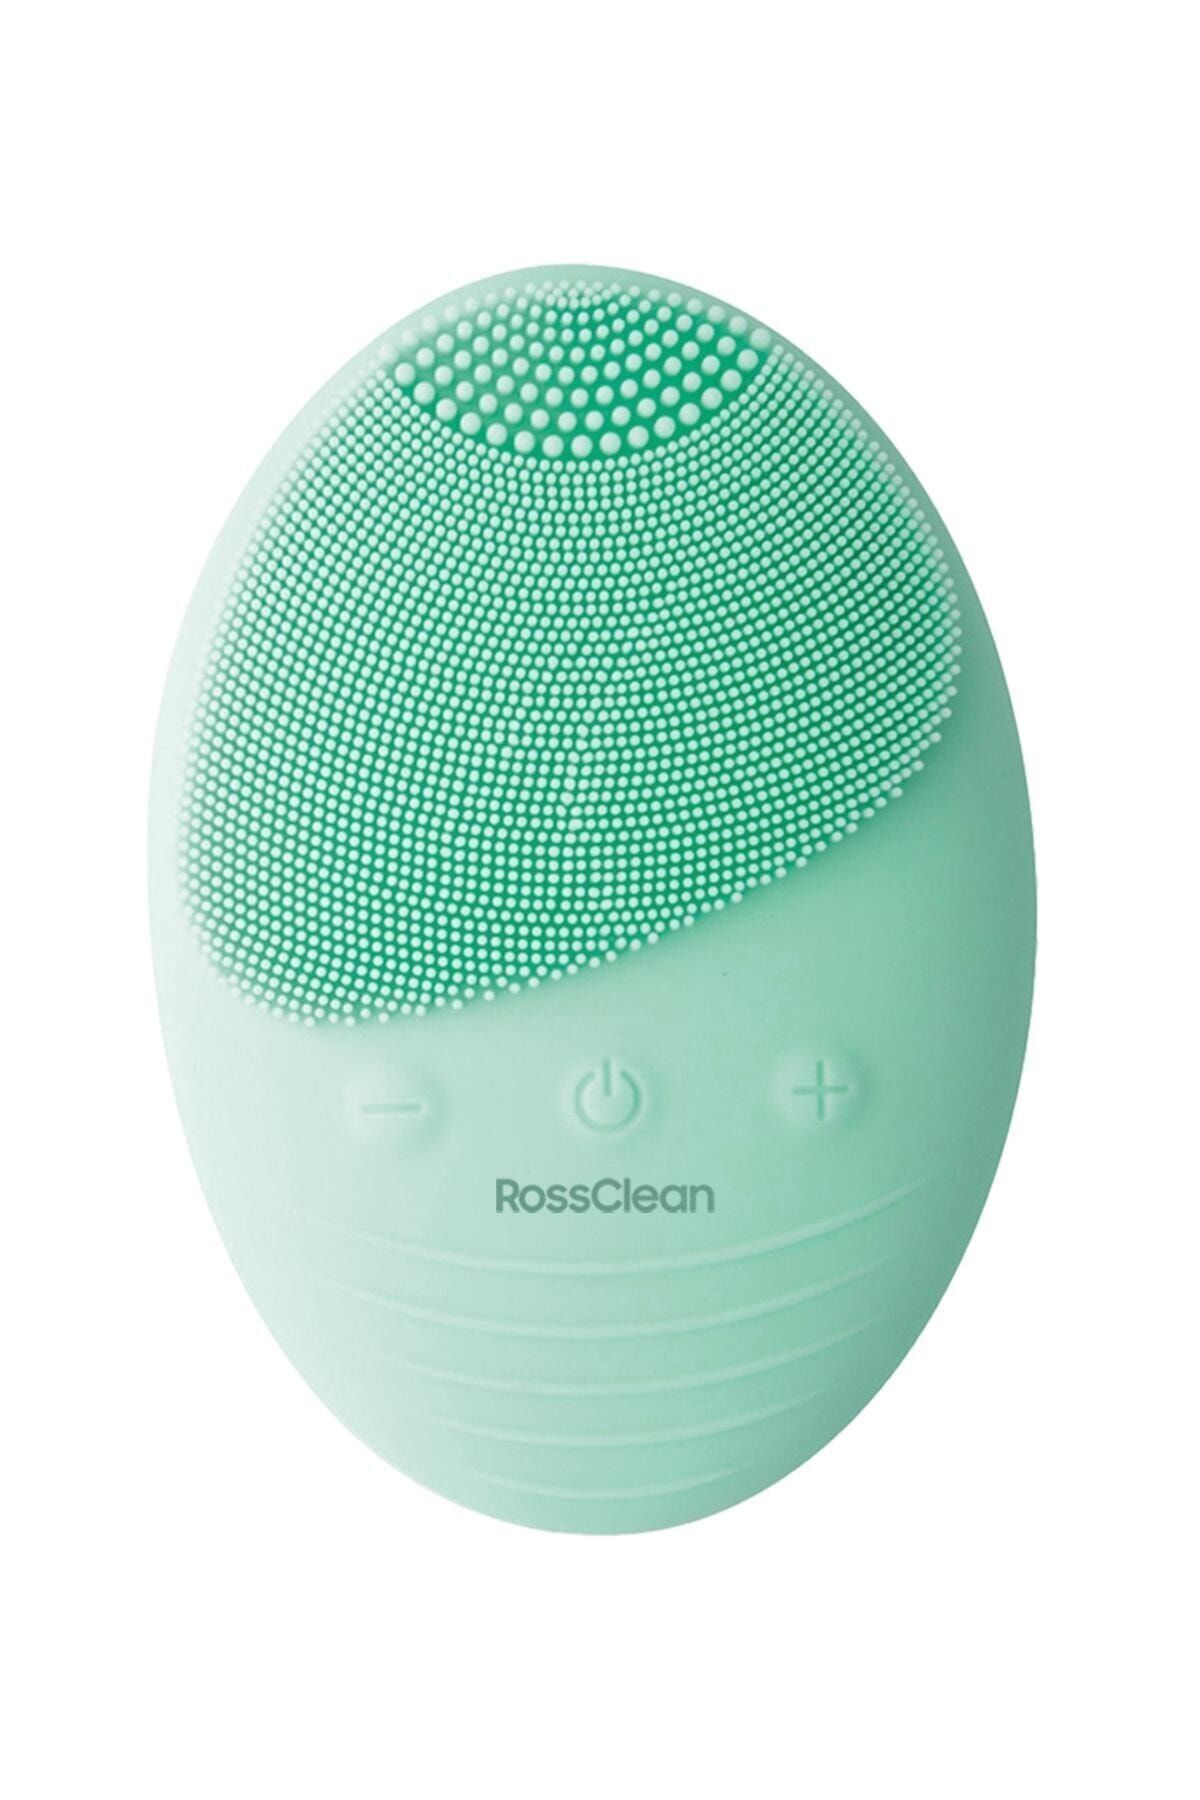 RossClean Pro Yüz Temizleme Ve Masaj Cihazı  5 Kademeli Fototerapi Modu  Kablosuz Şarjlı  Yeşil